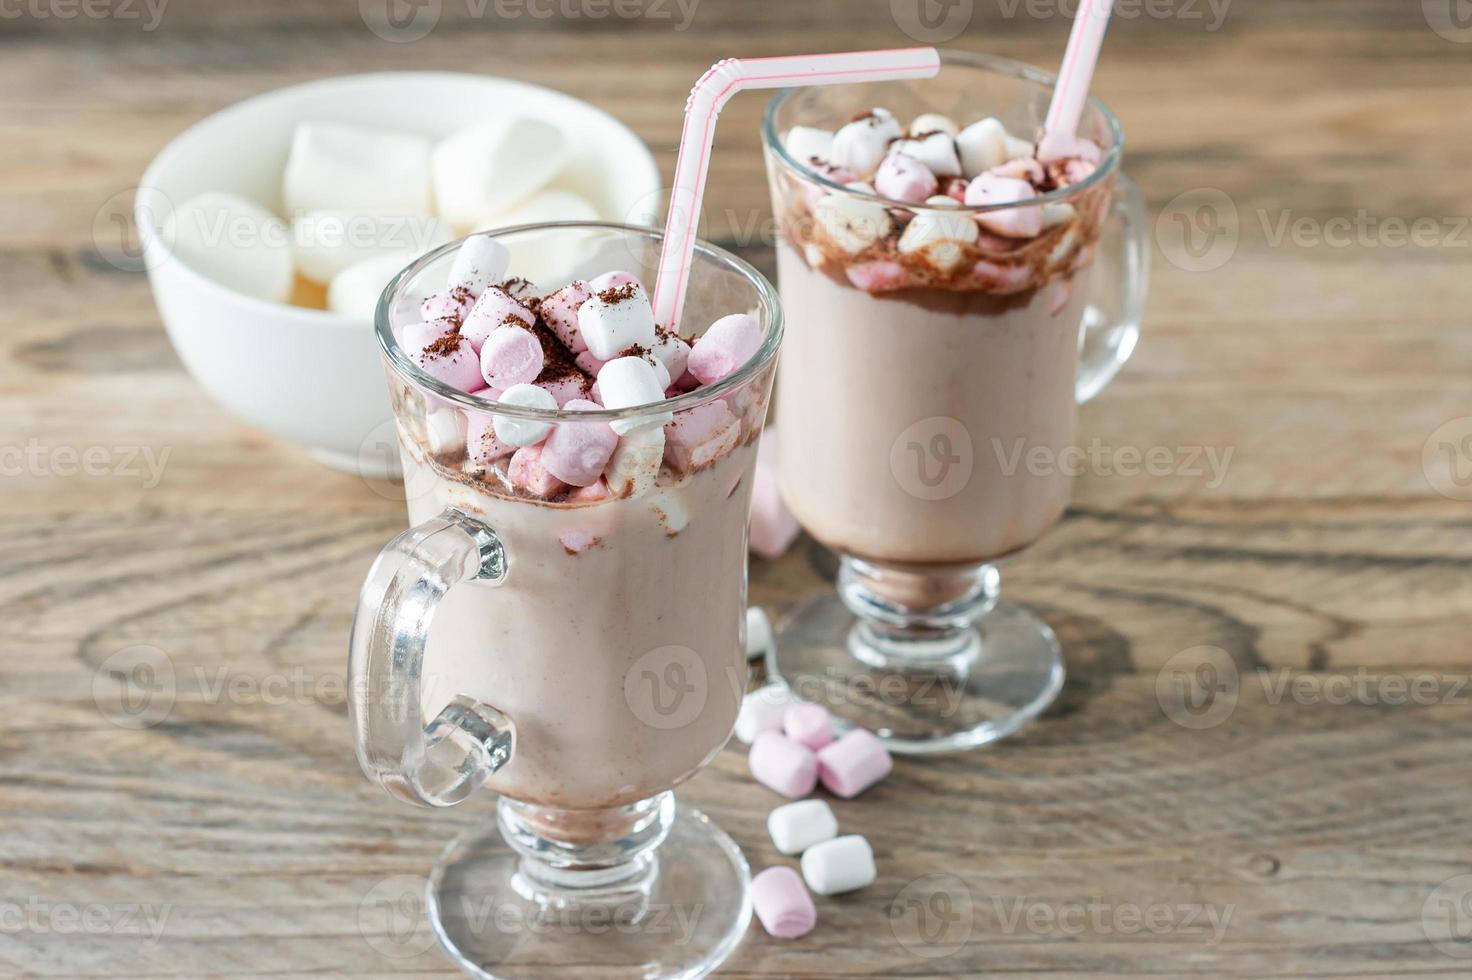 heißes kakao- oder schokoladengetränk mit marshmallow im glasbecher auf holztisch. konzept der gemütlichen weihnachts- und neujahrsferien, kopierraum foto